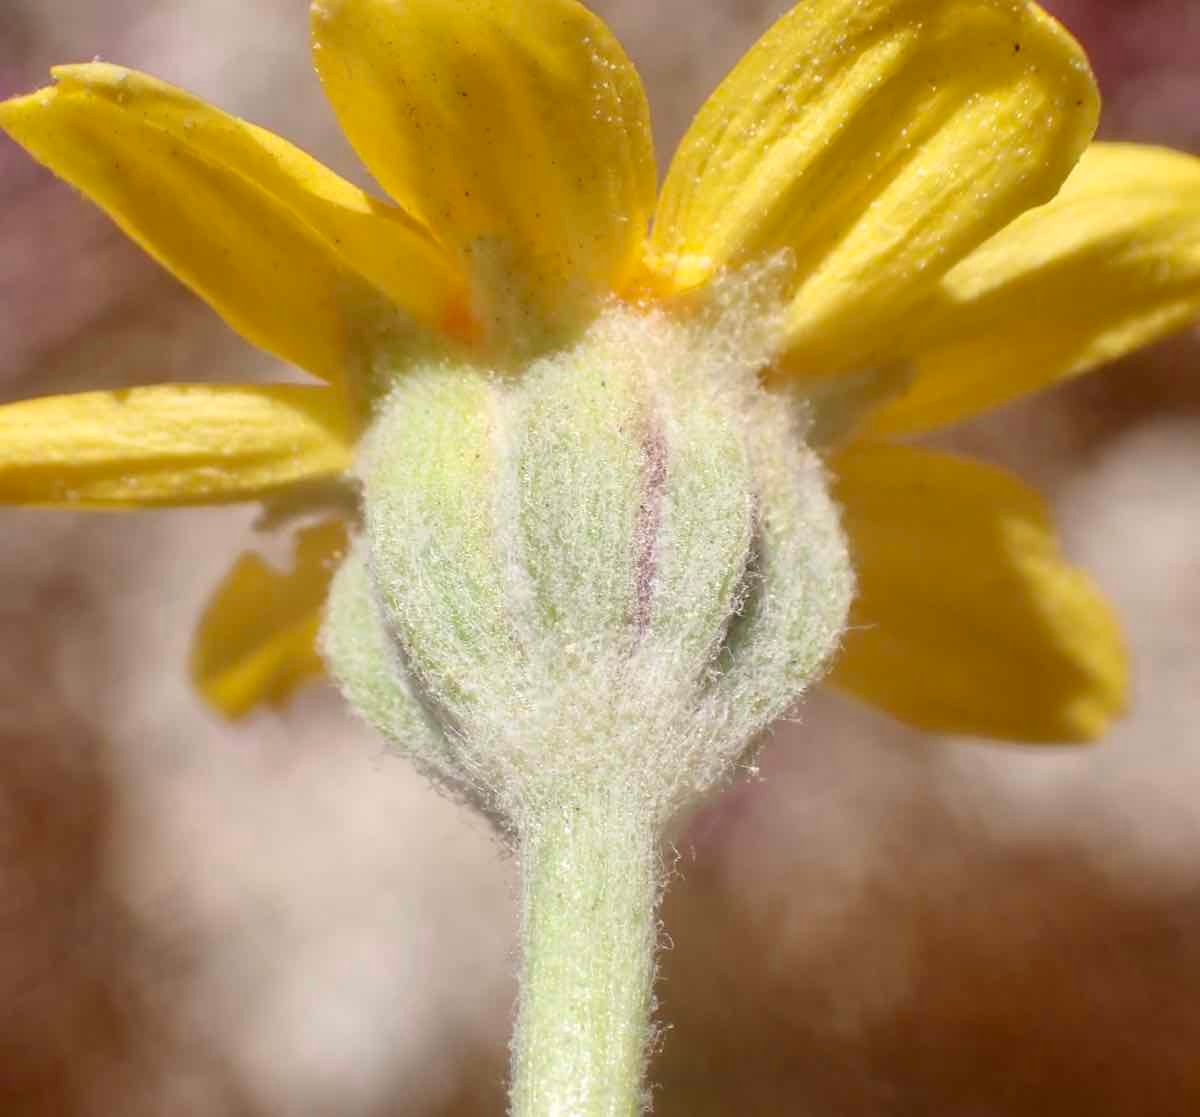 Eriophyllum lanatum var. obovatum